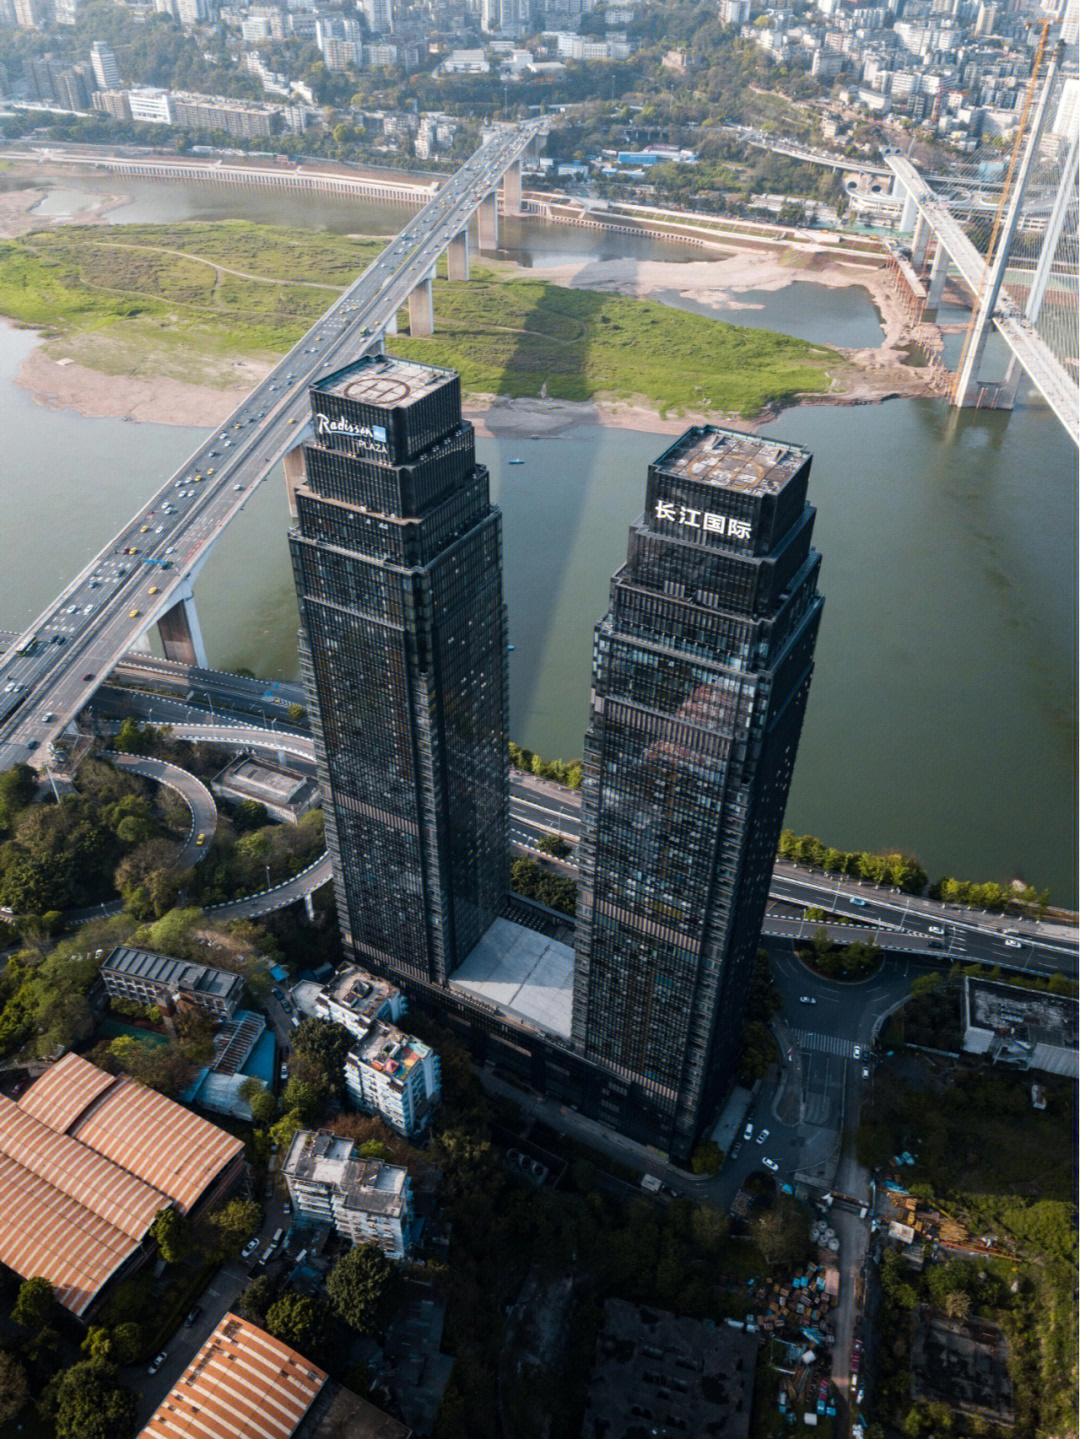 在南滨路旁的两栋大楼,因为在长江边上,又叫长江国际